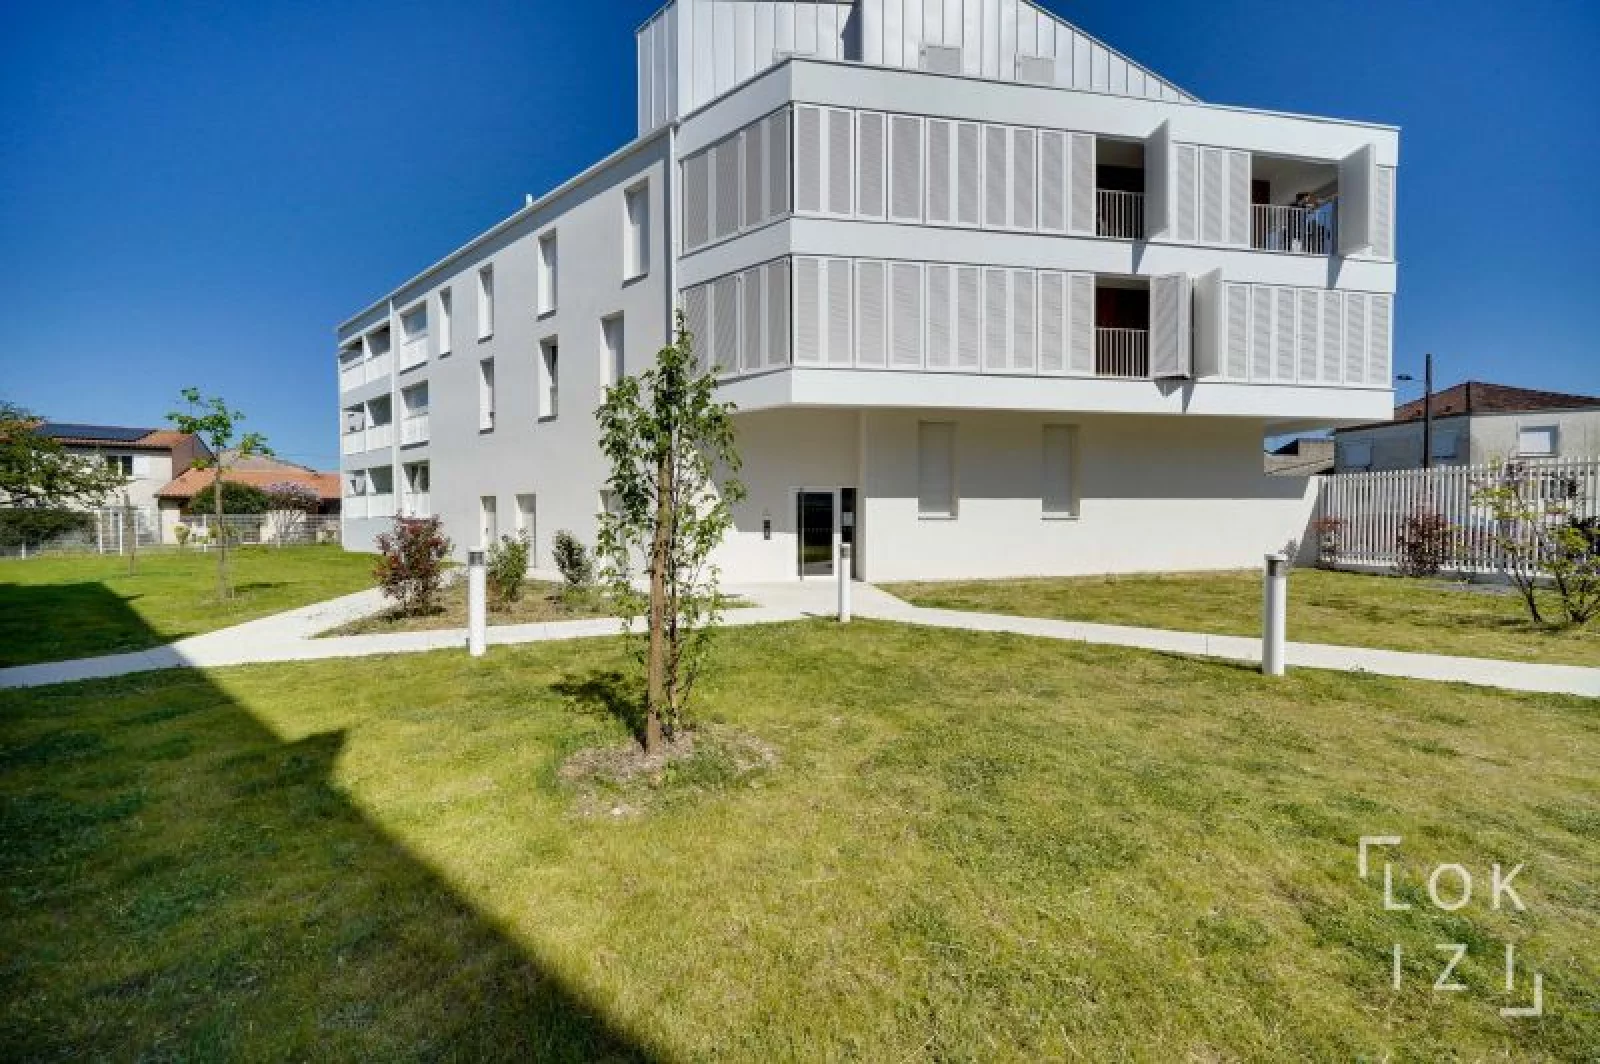 Location appartement meublé 4 pièces 93m²  (Bordeaux - Bacalan)